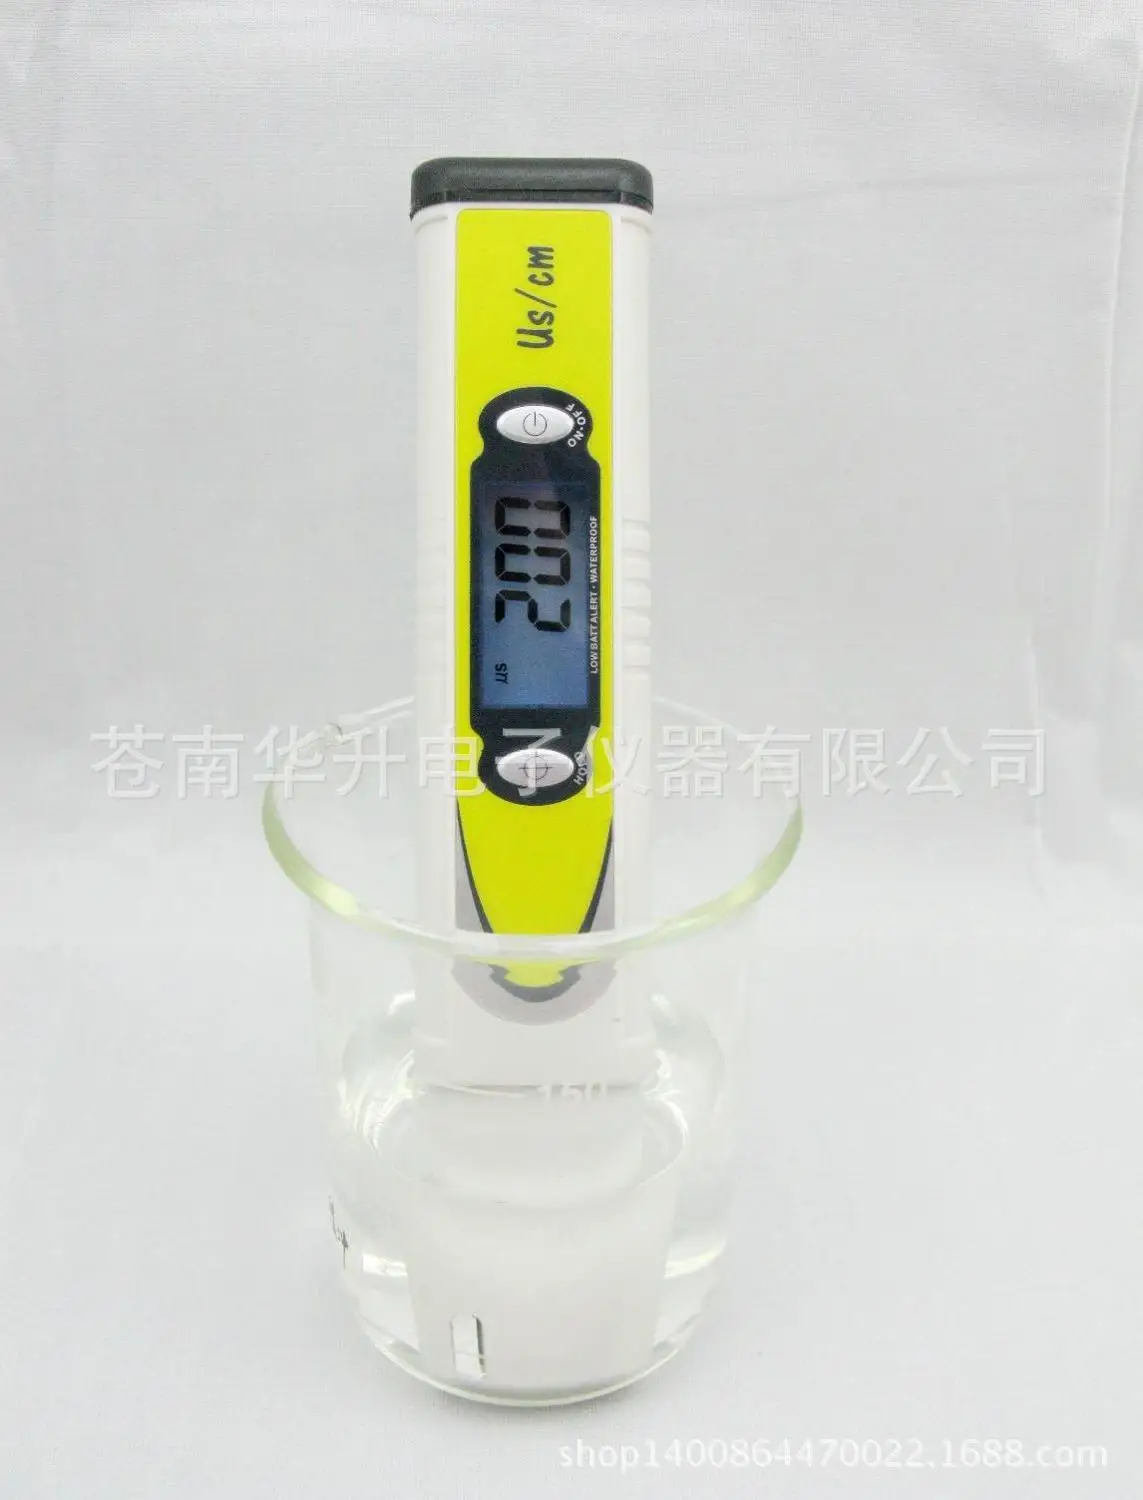 Производитель ручка экспортное исполнение ручка проводности/Измеритель проводимости/ms/cm/подсветка ручка проводности CD-988